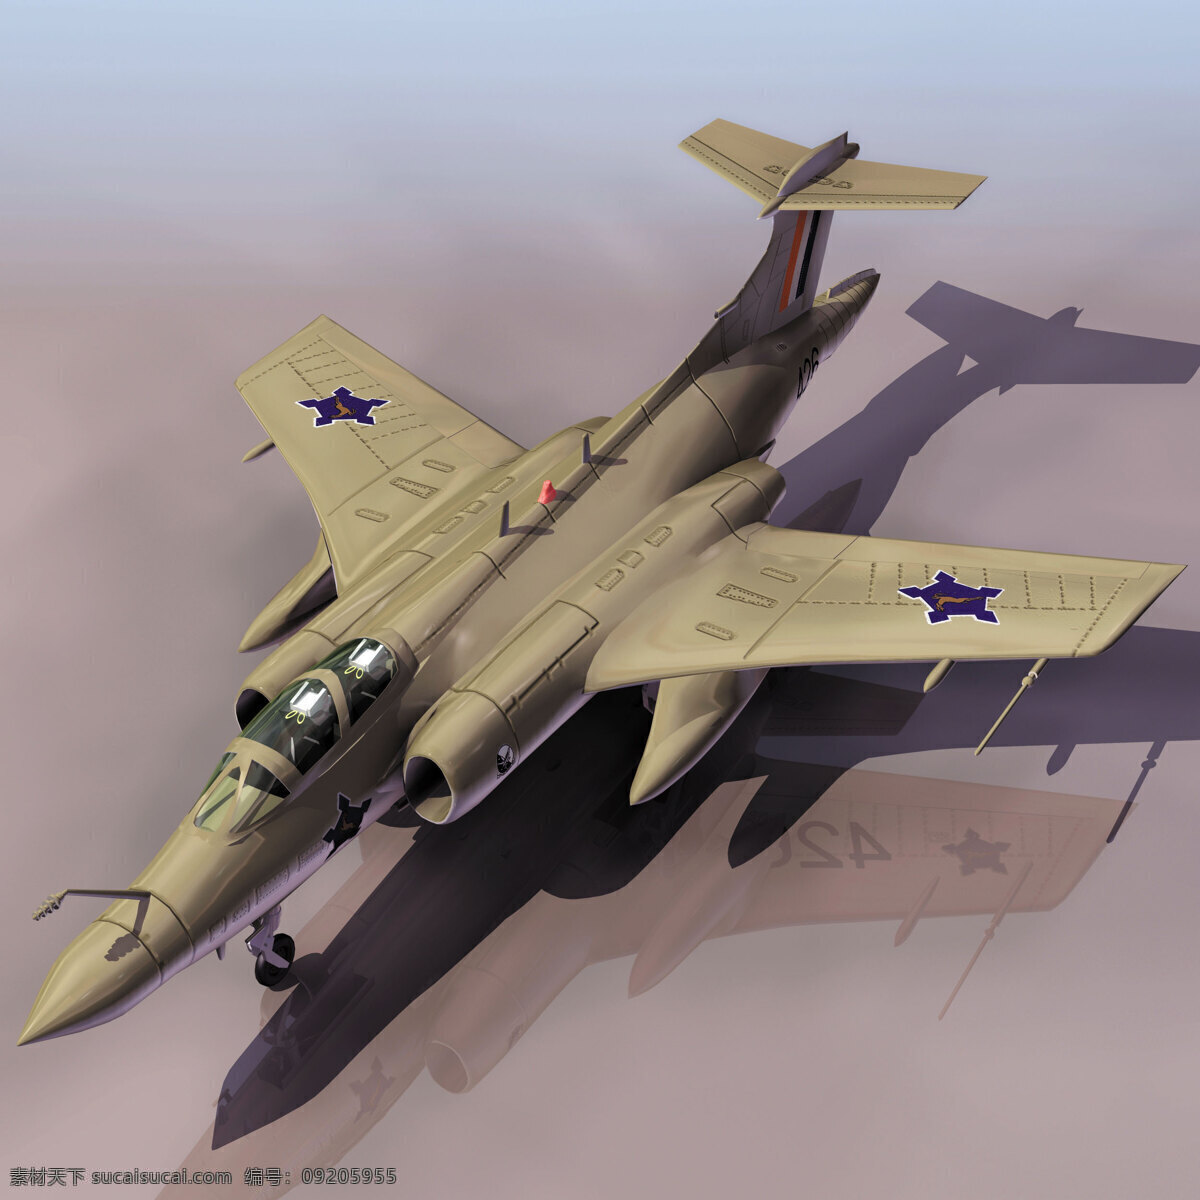 飞机模型05 buccane 飞机模型 军事模型 空军武器库 3d模型素材 其他3d模型